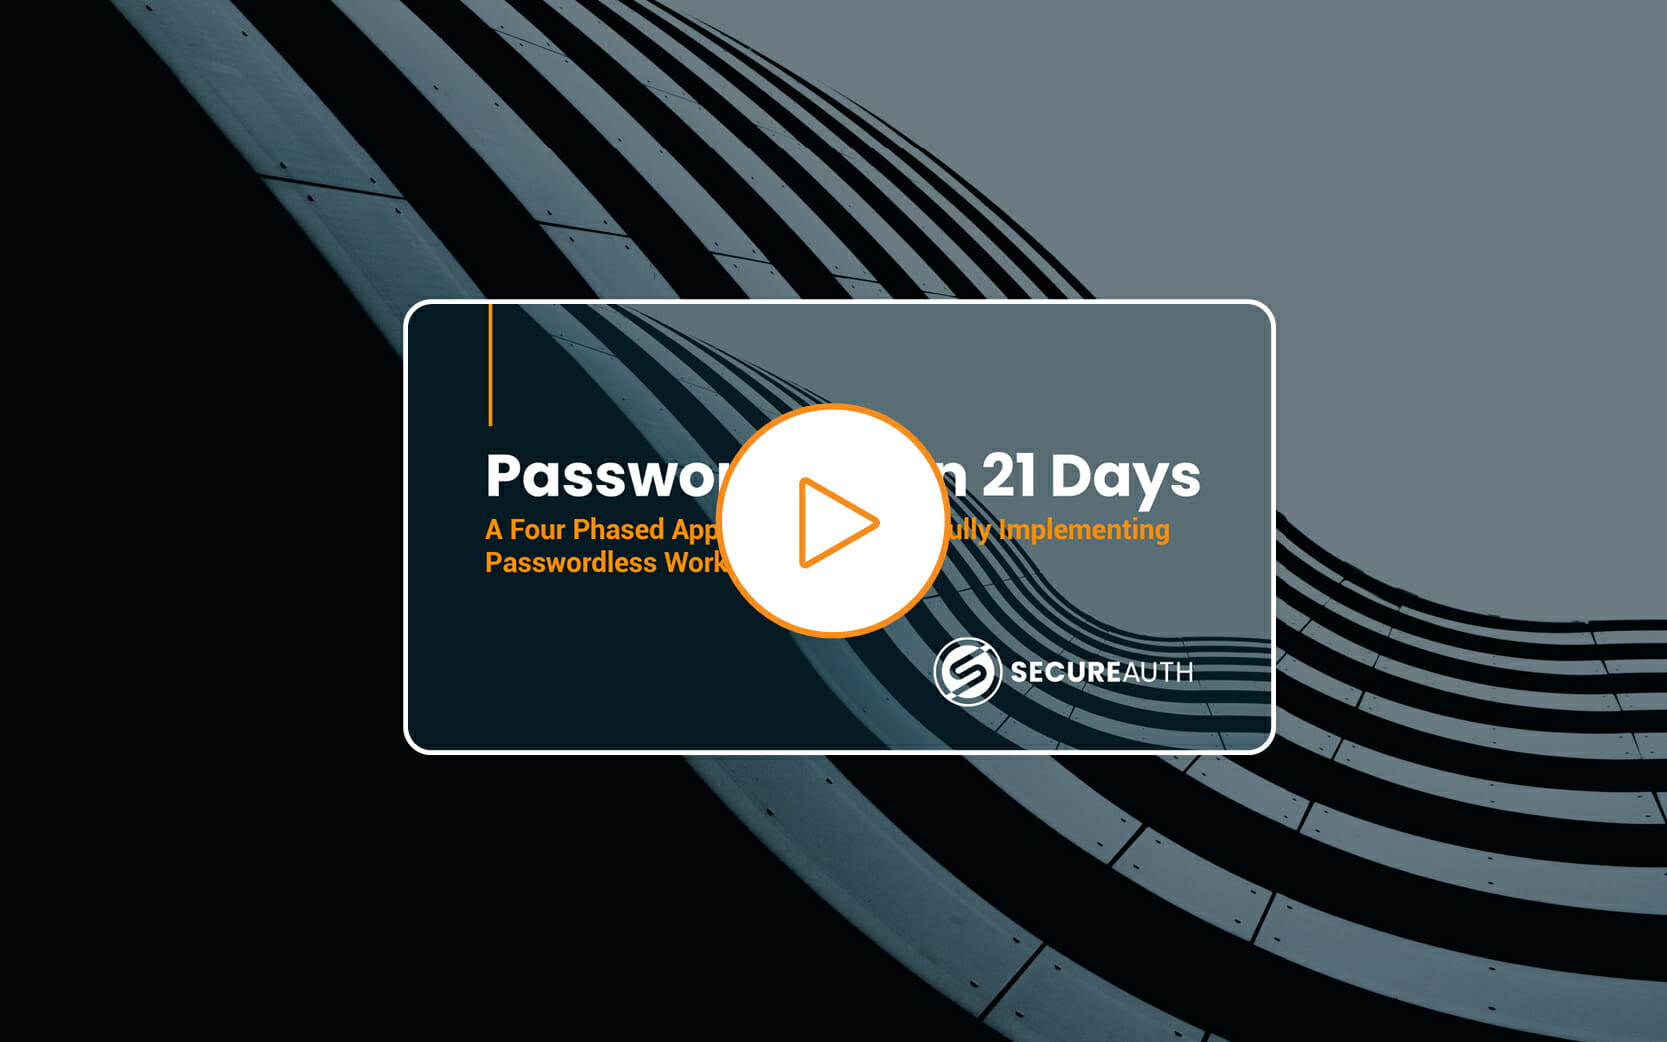 Go Passwordless in 21 Days